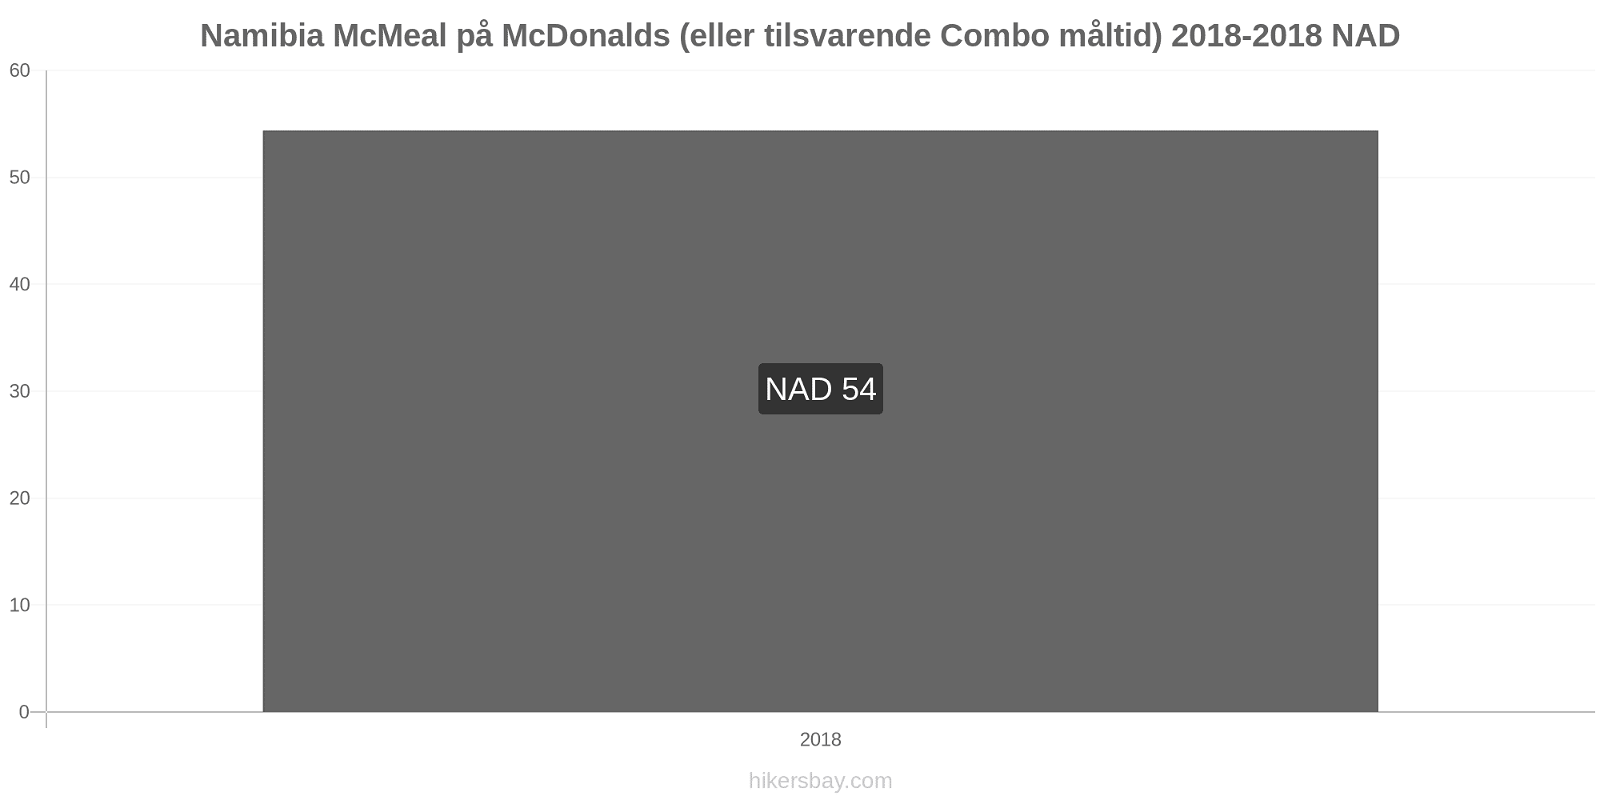 Namibia prisændringer McMeal på McDonalds (eller tilsvarende Combo måltid) hikersbay.com